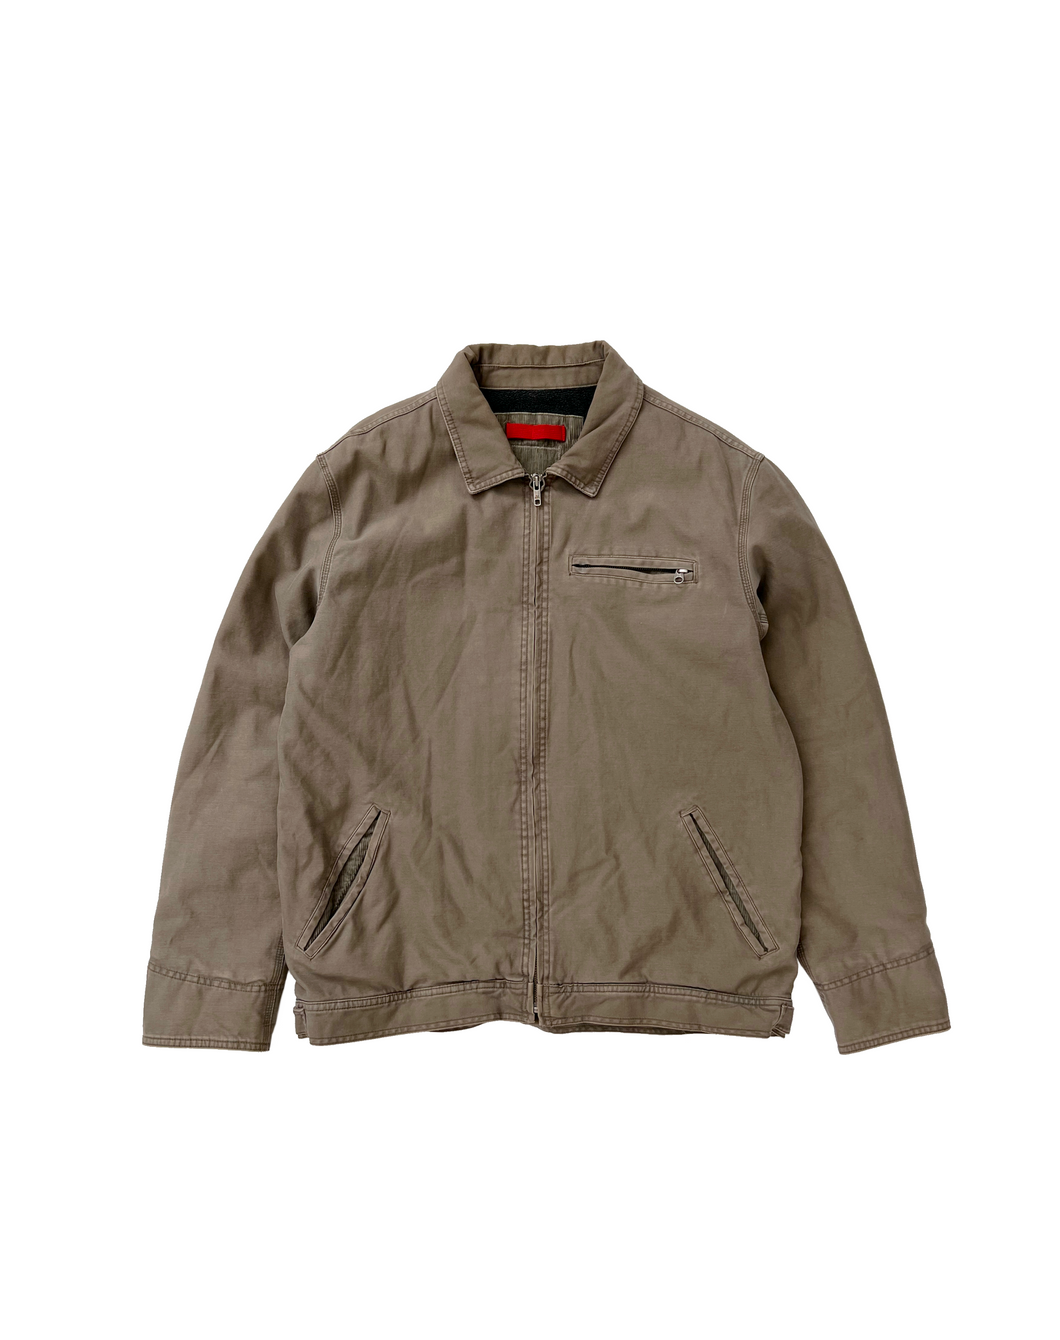 Vintage Sherpa Lined Shop Jacket